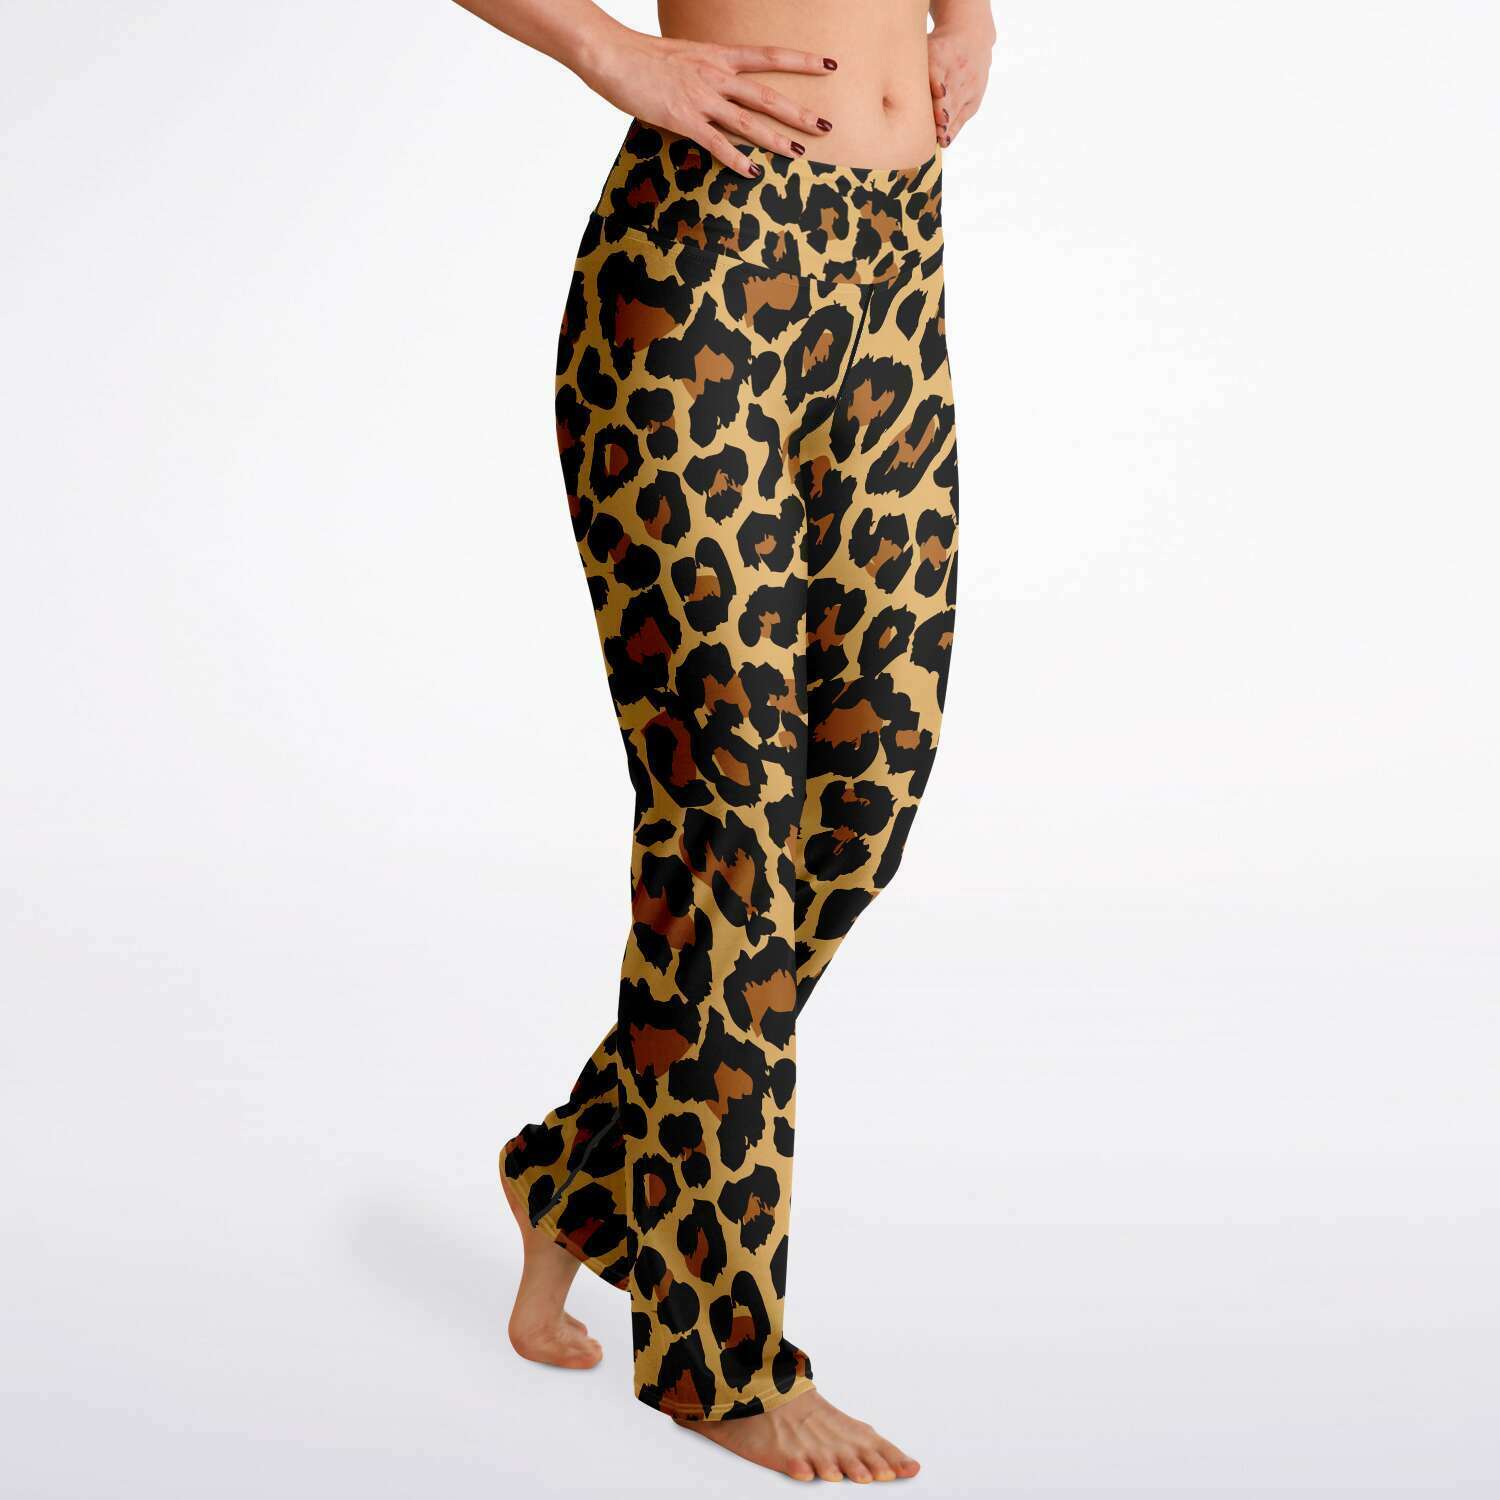 Honeycomb Leggingswomen's Leopard Print High Waist Flare Leggings